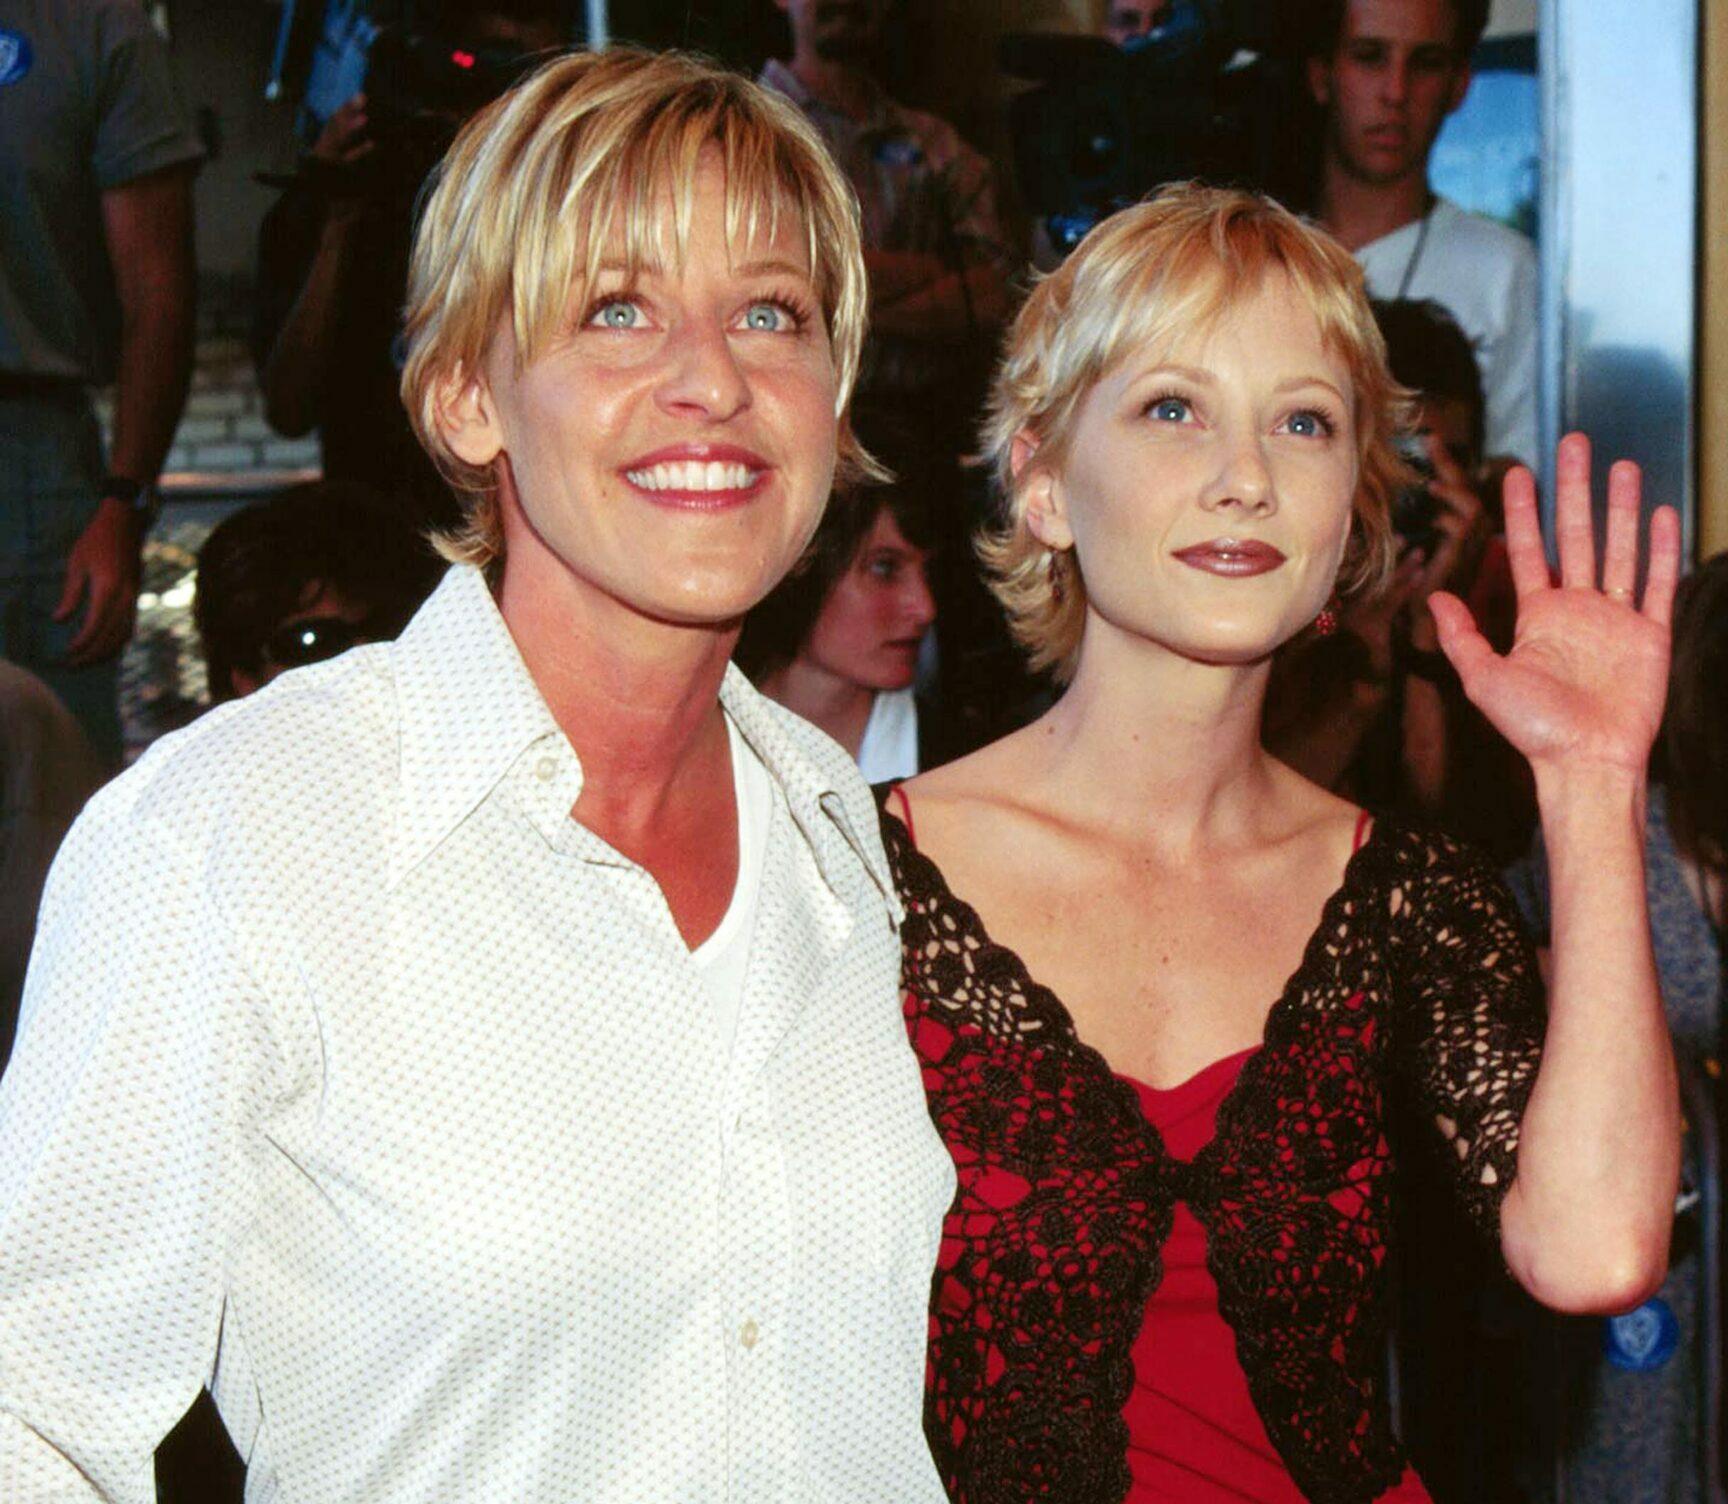 Anne Heche and Ellen DeGeneres.